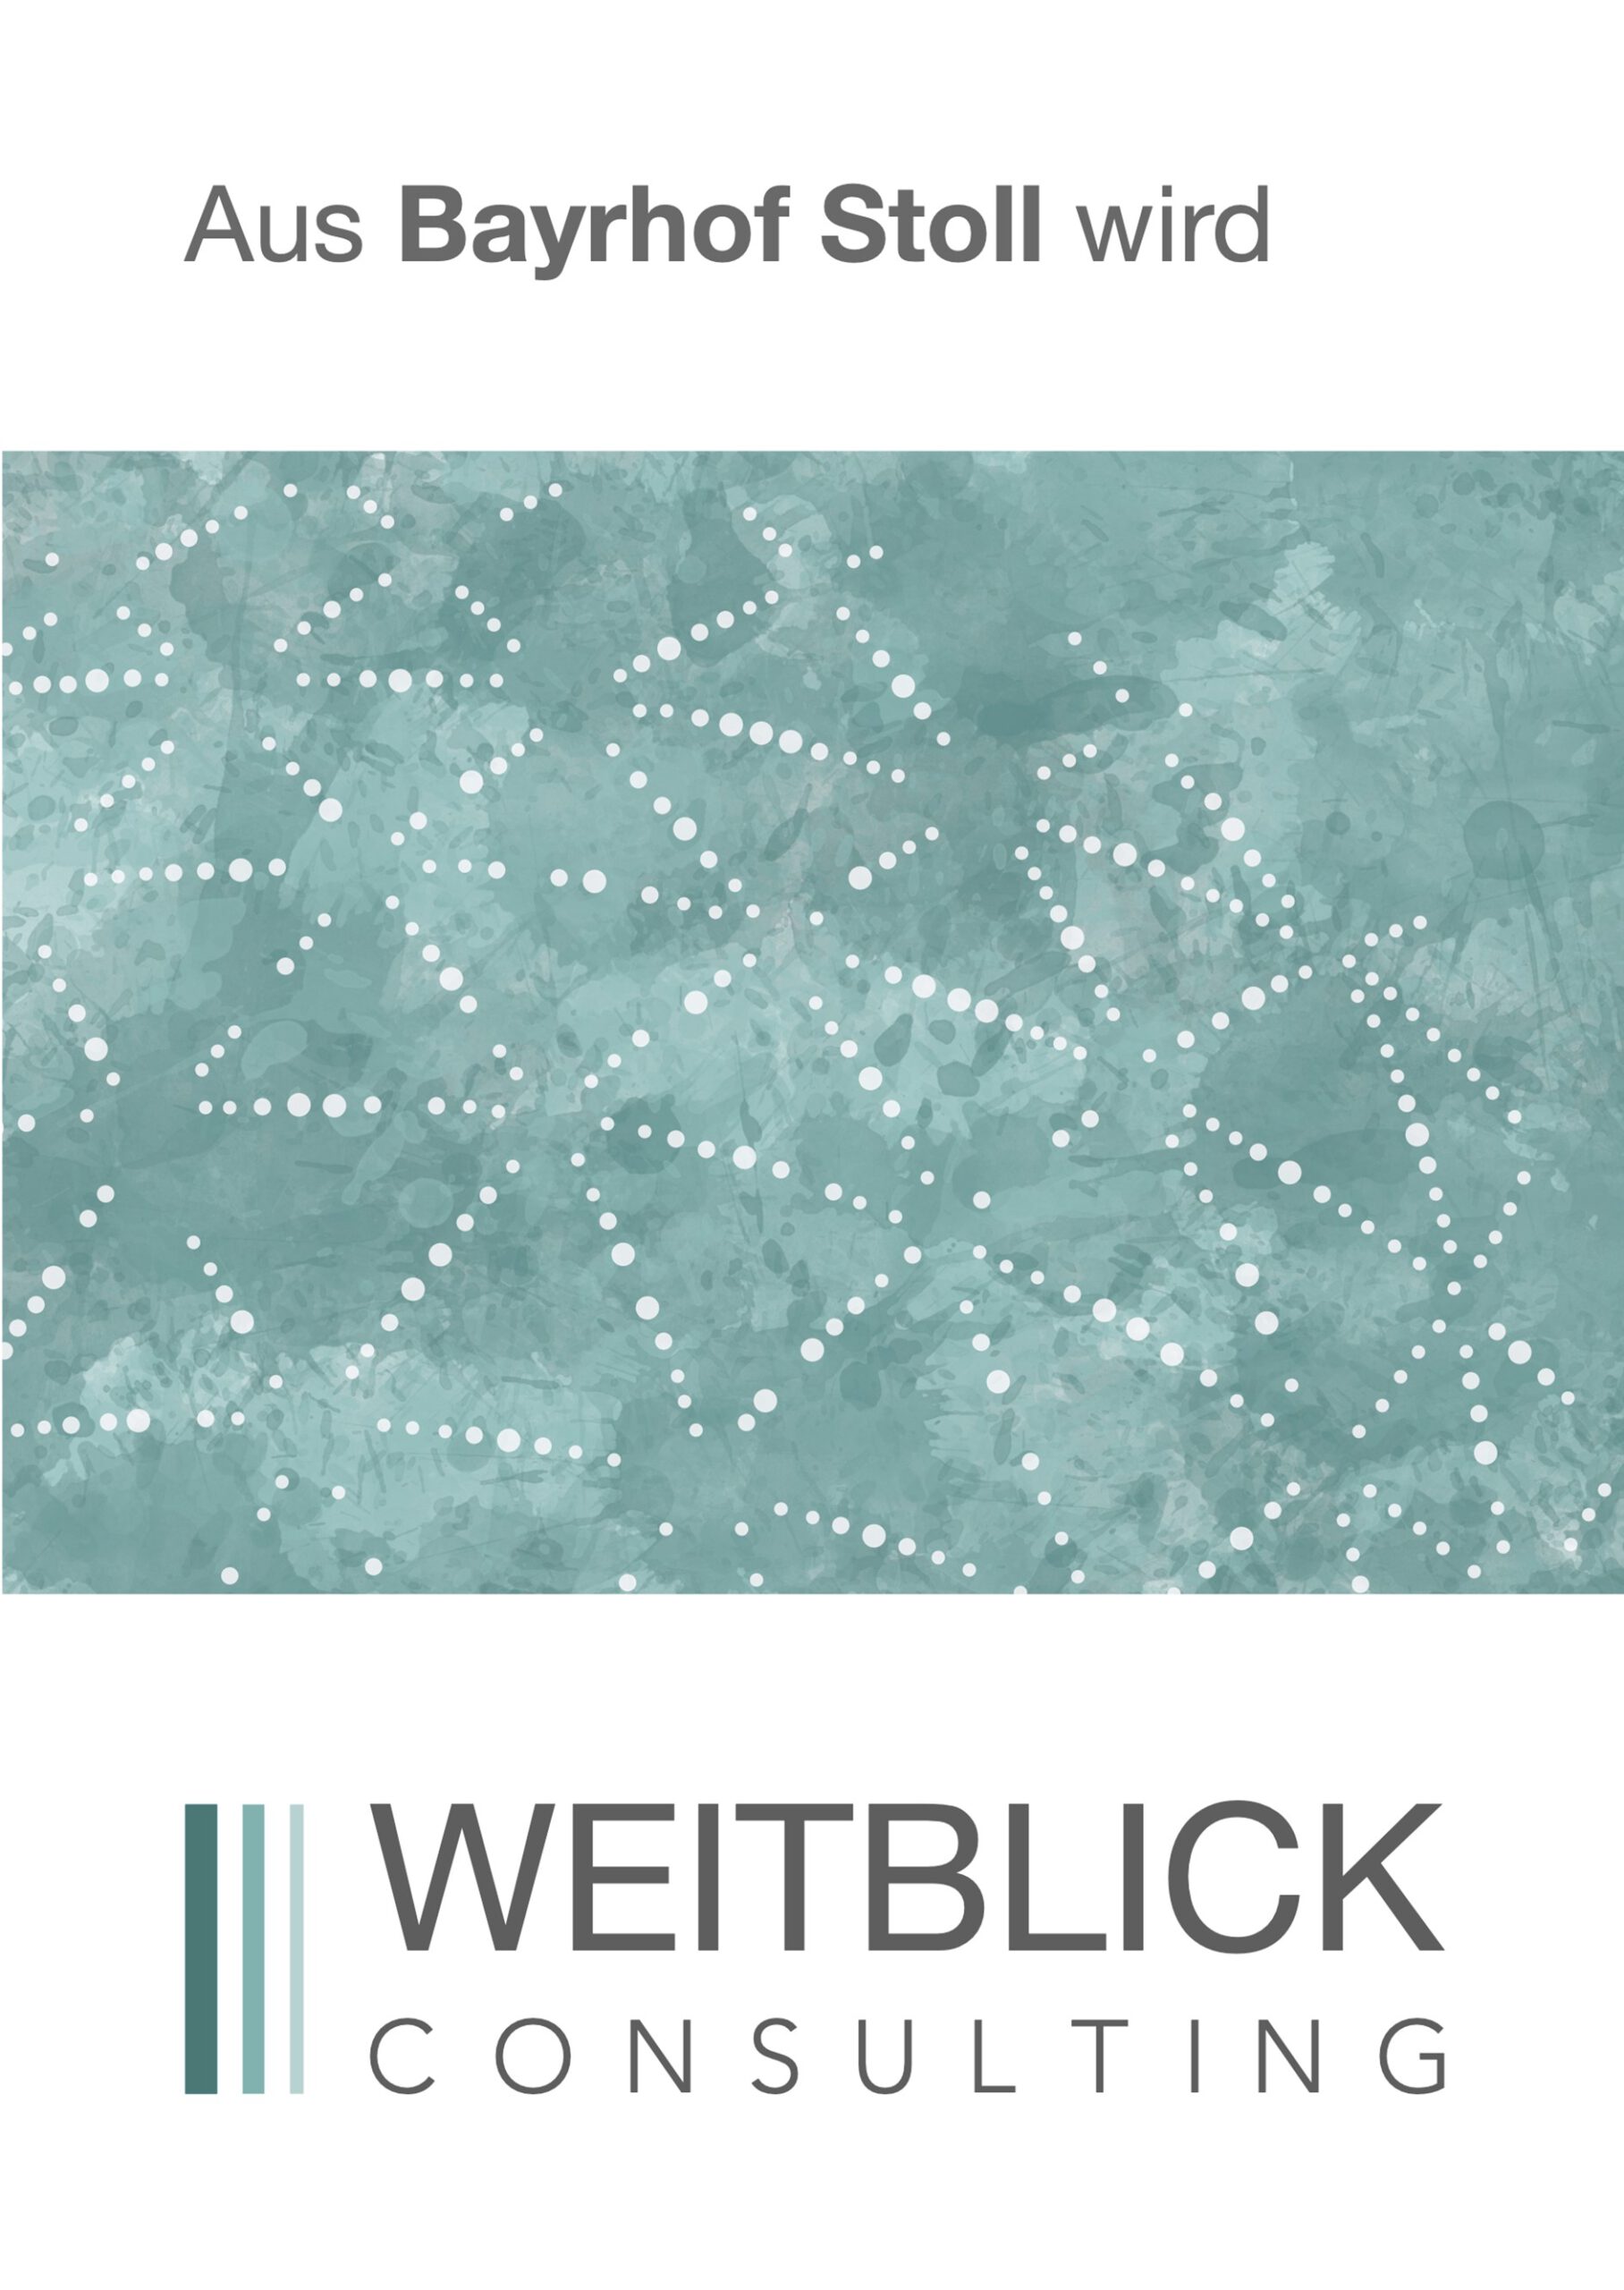 Aus Bayrhof Stoll GmbH wird WEITBLICK GmbH